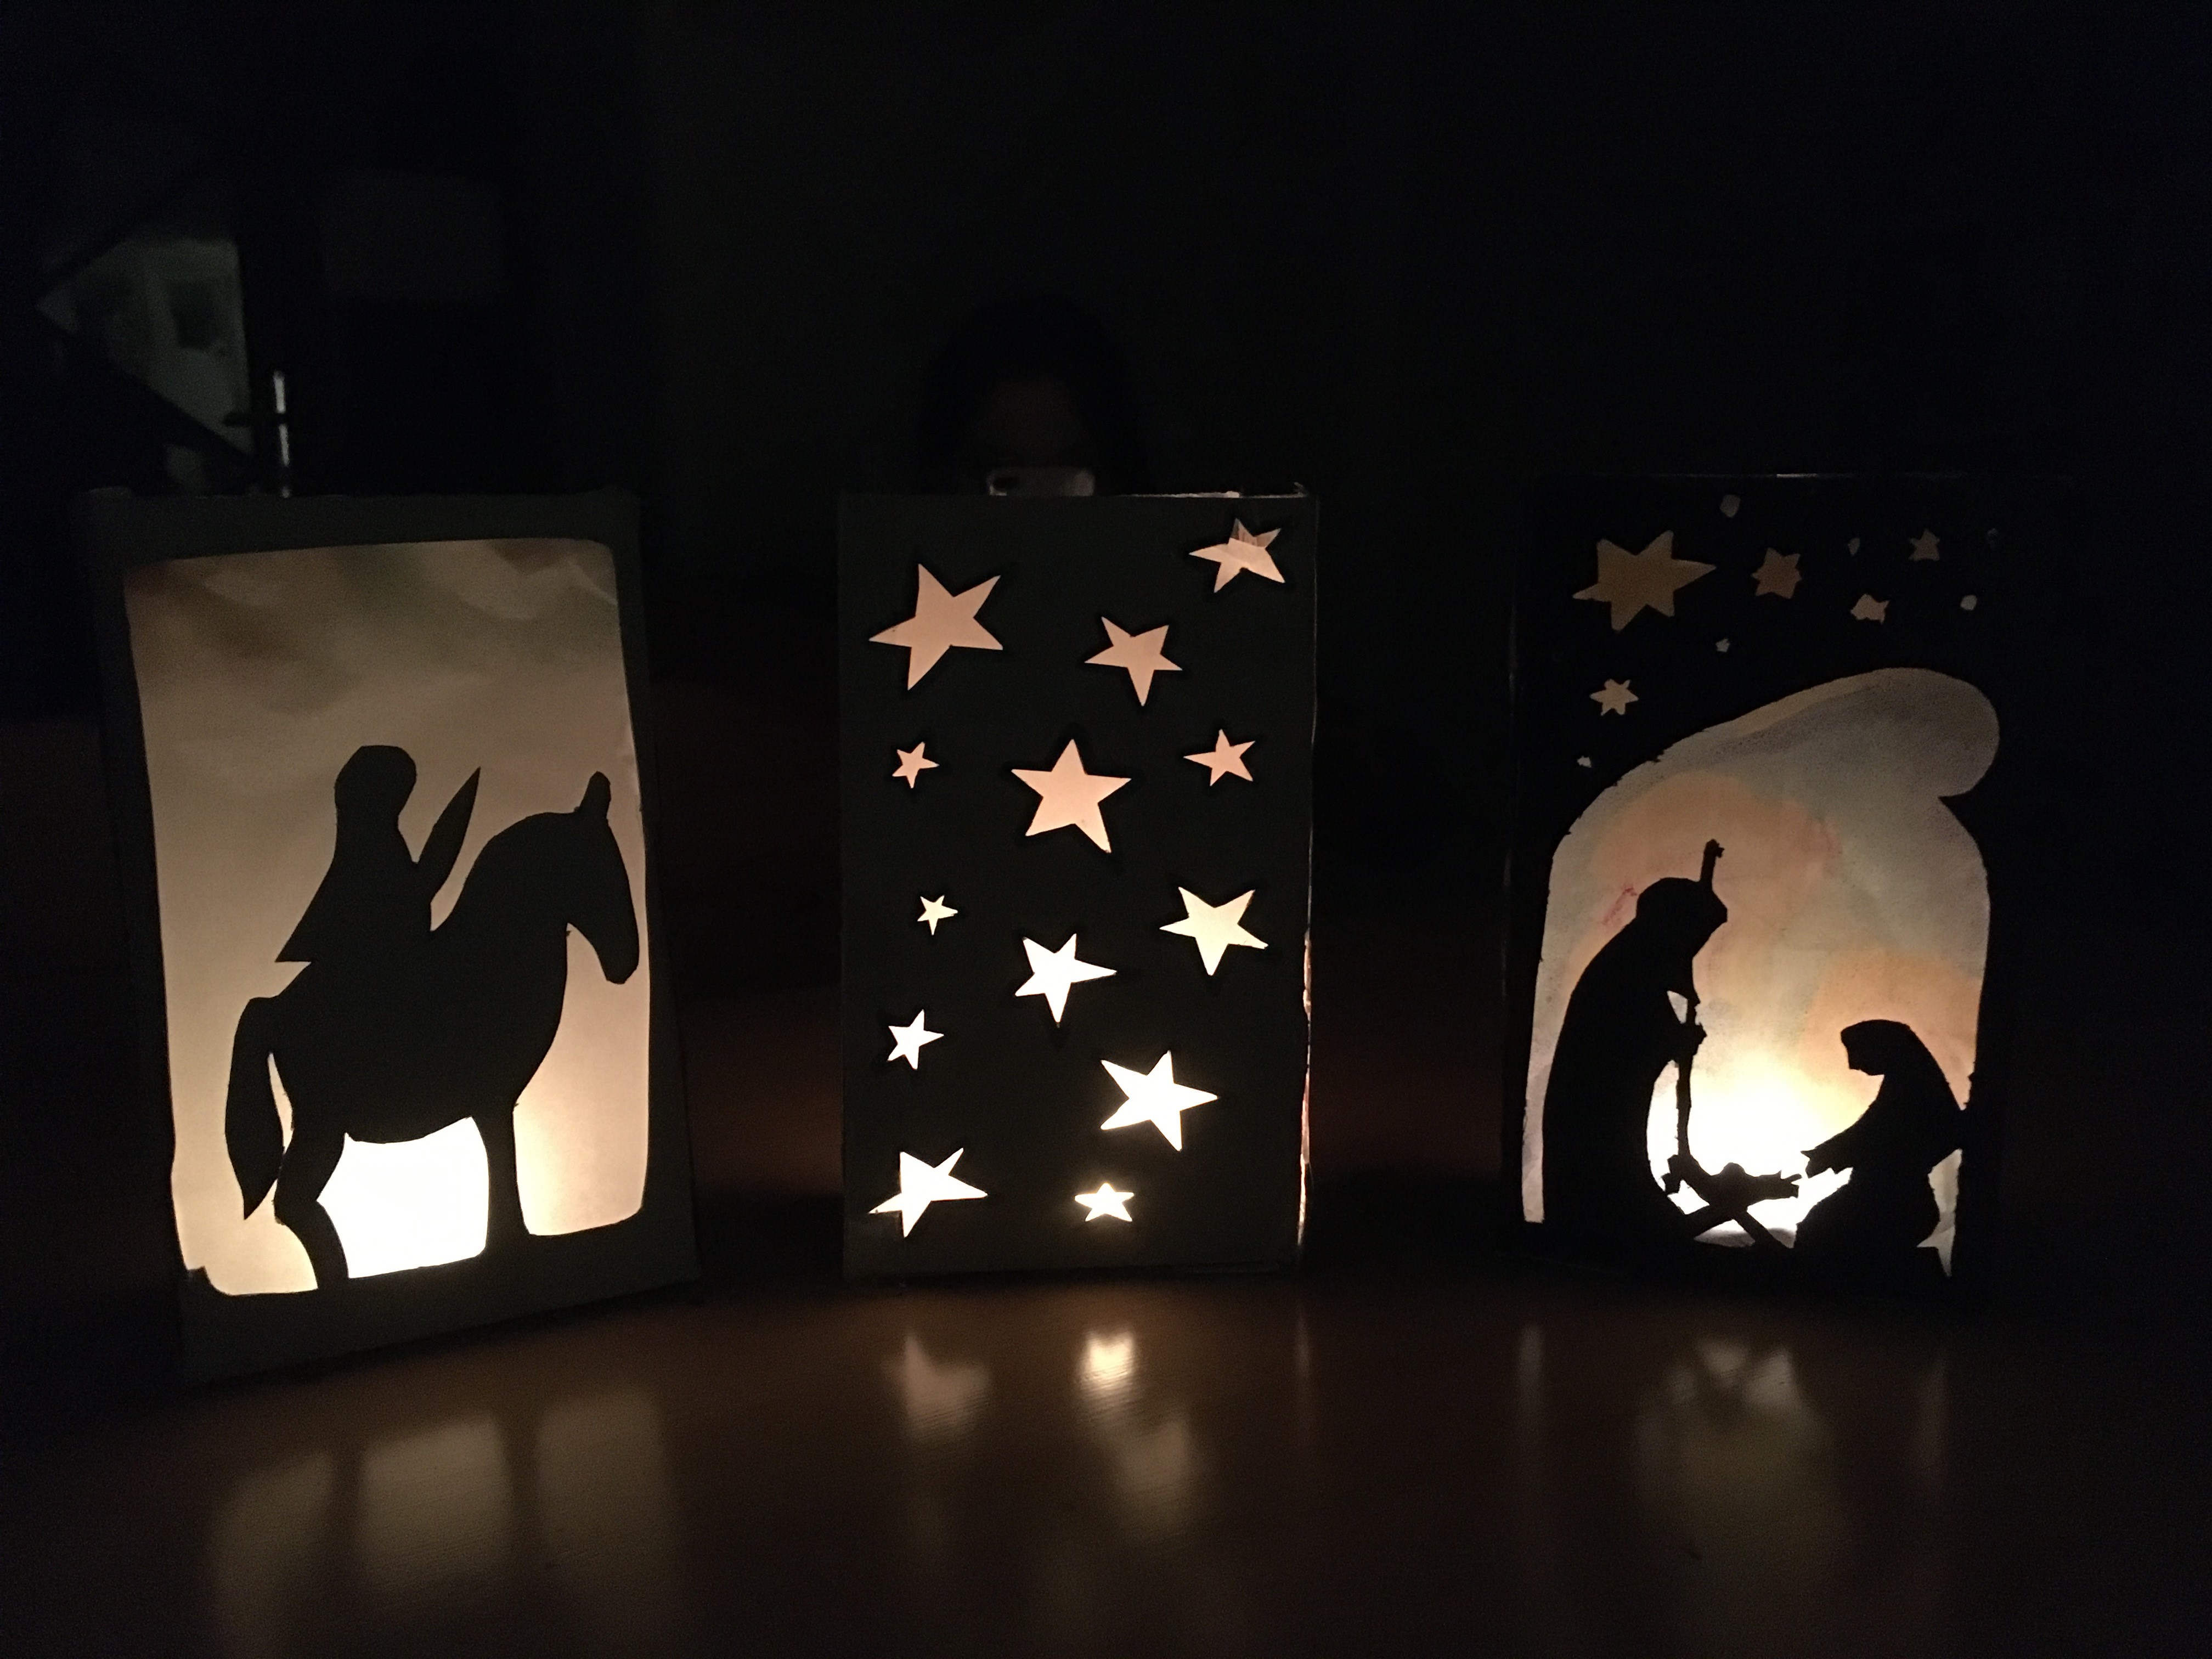 I enjoyed crafting these lanterns. (c) Anna Whitehead.